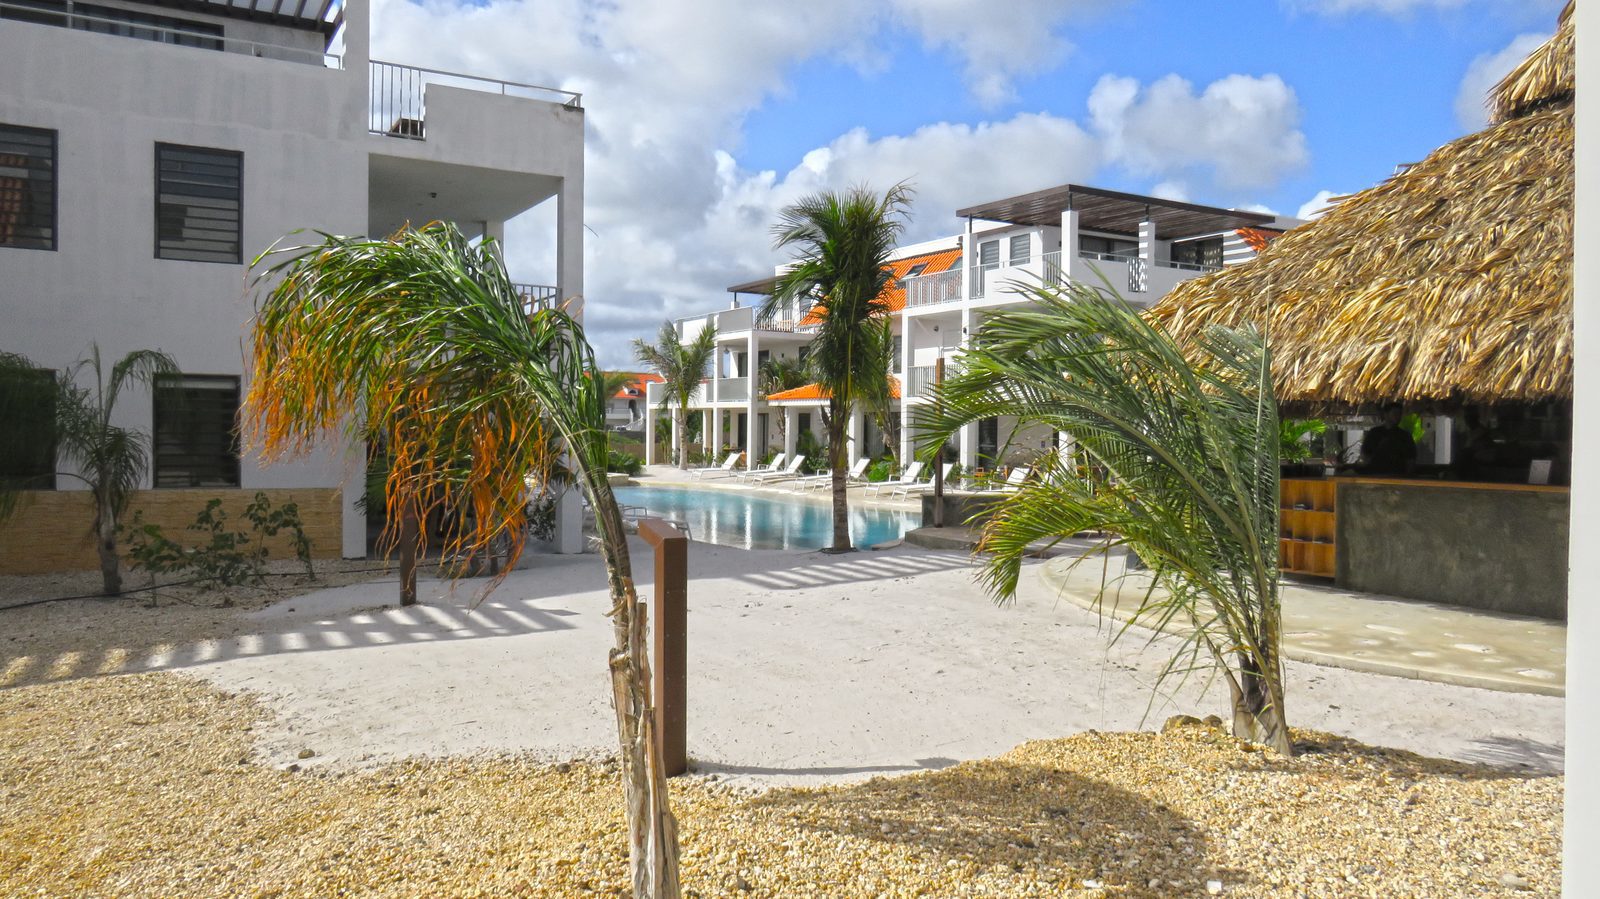 Procura alojamentos em Bonaire? Dê uma olhada nos alojamentos disponíveis no nosso resort. Apartamentos luxuosos, adequados para crianças, equipados com todo o conforto que poderia desejar!